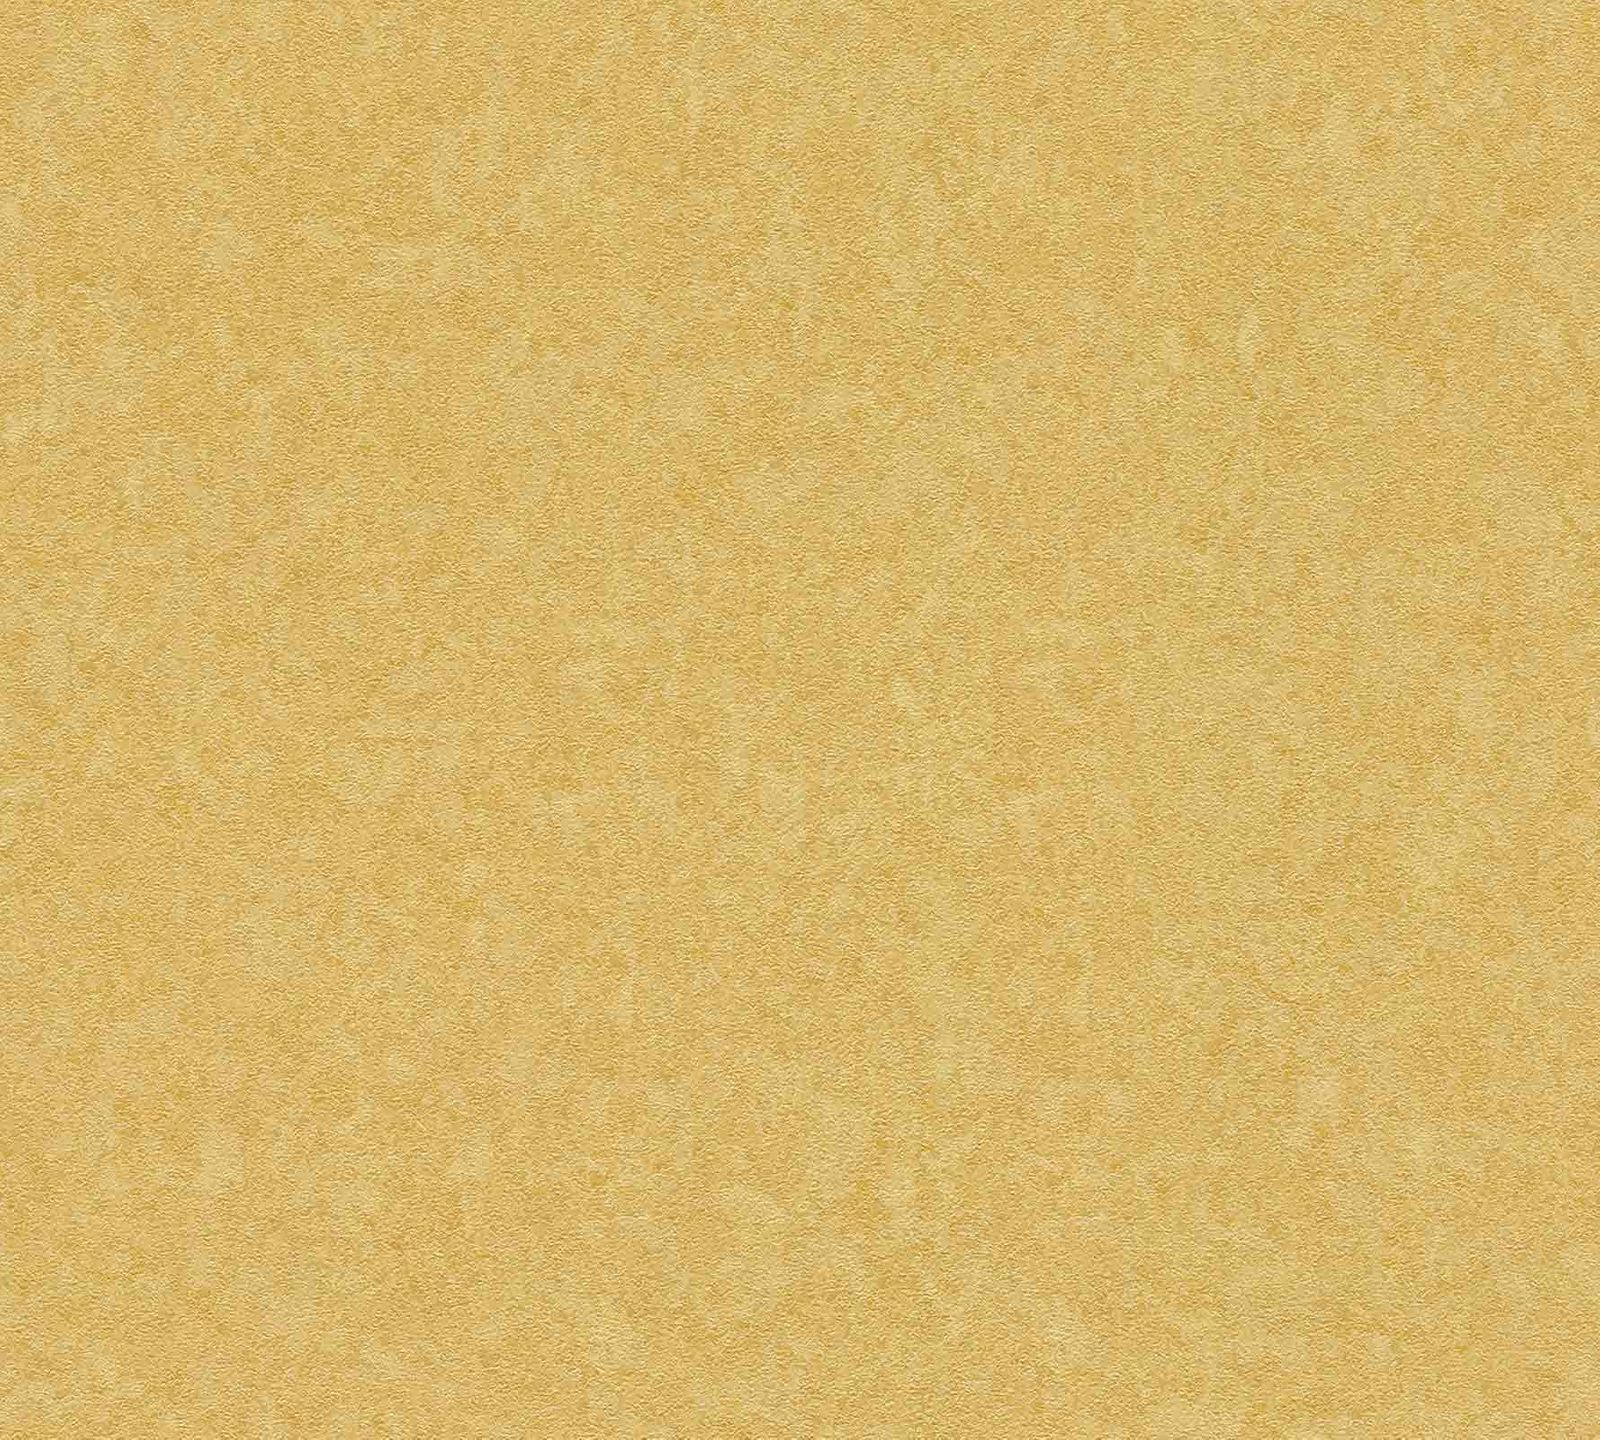 Enkel gold tekstureret tapet Wallpaper